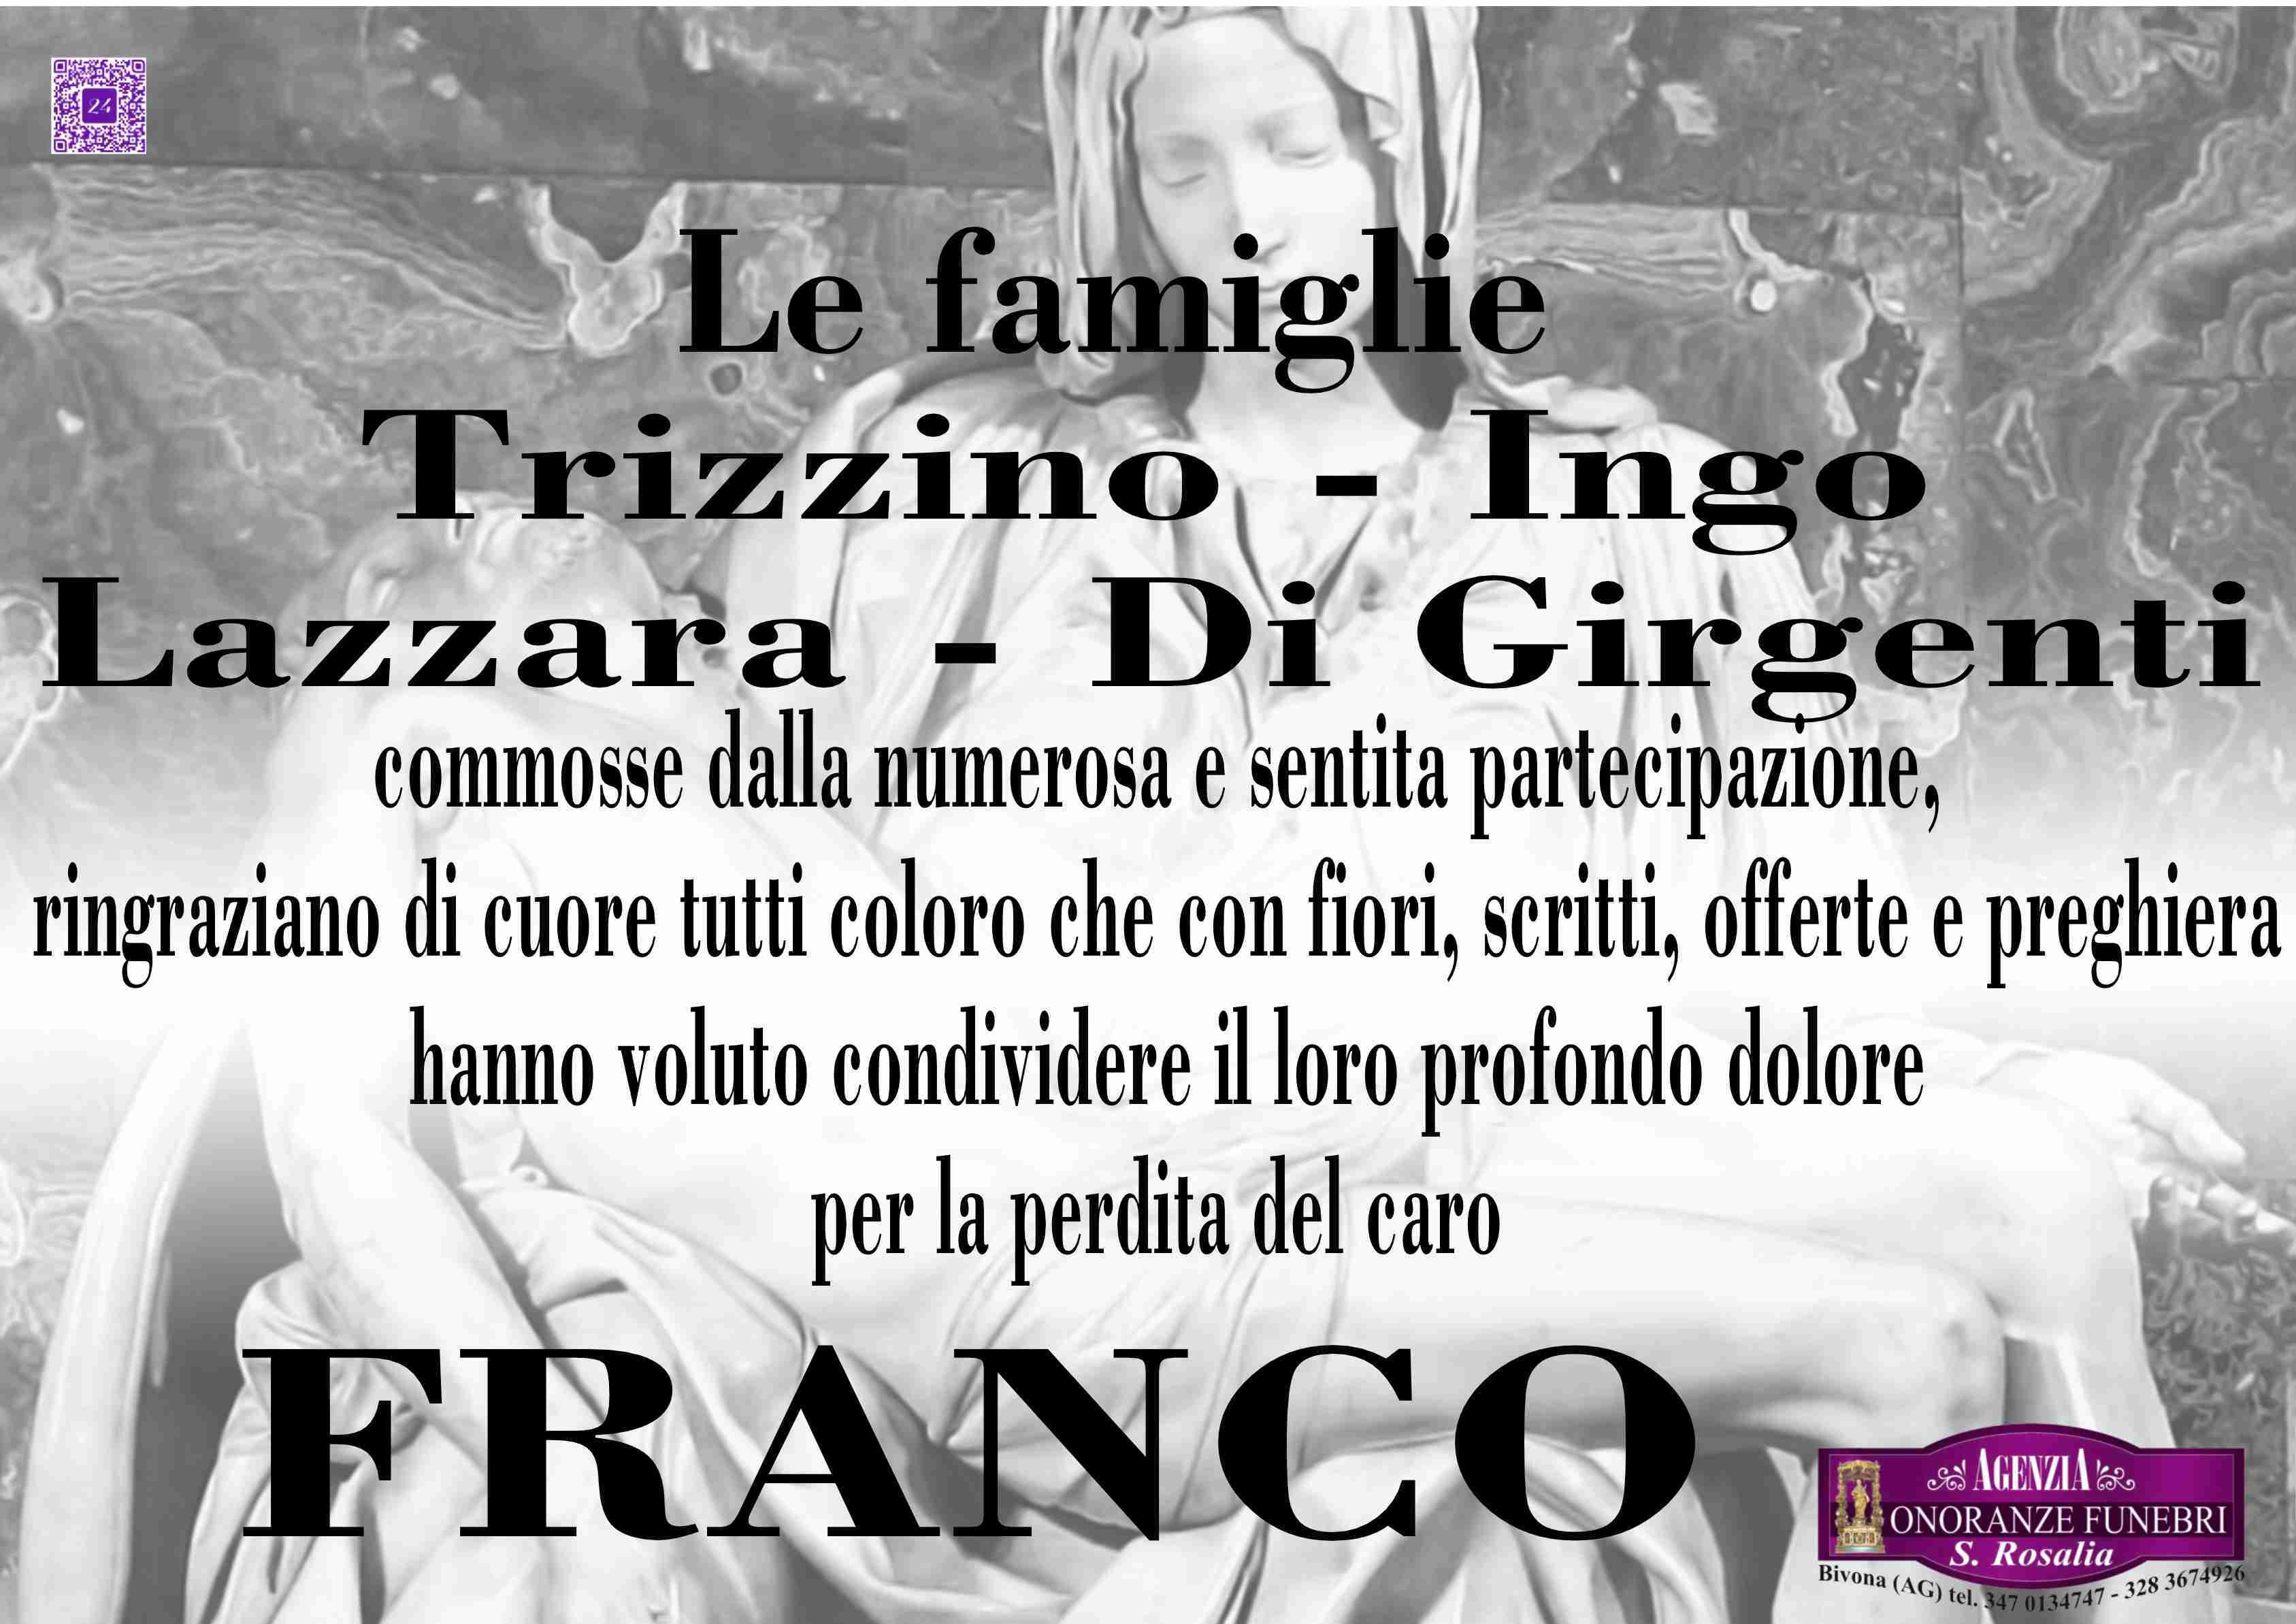 Franco Trizzino